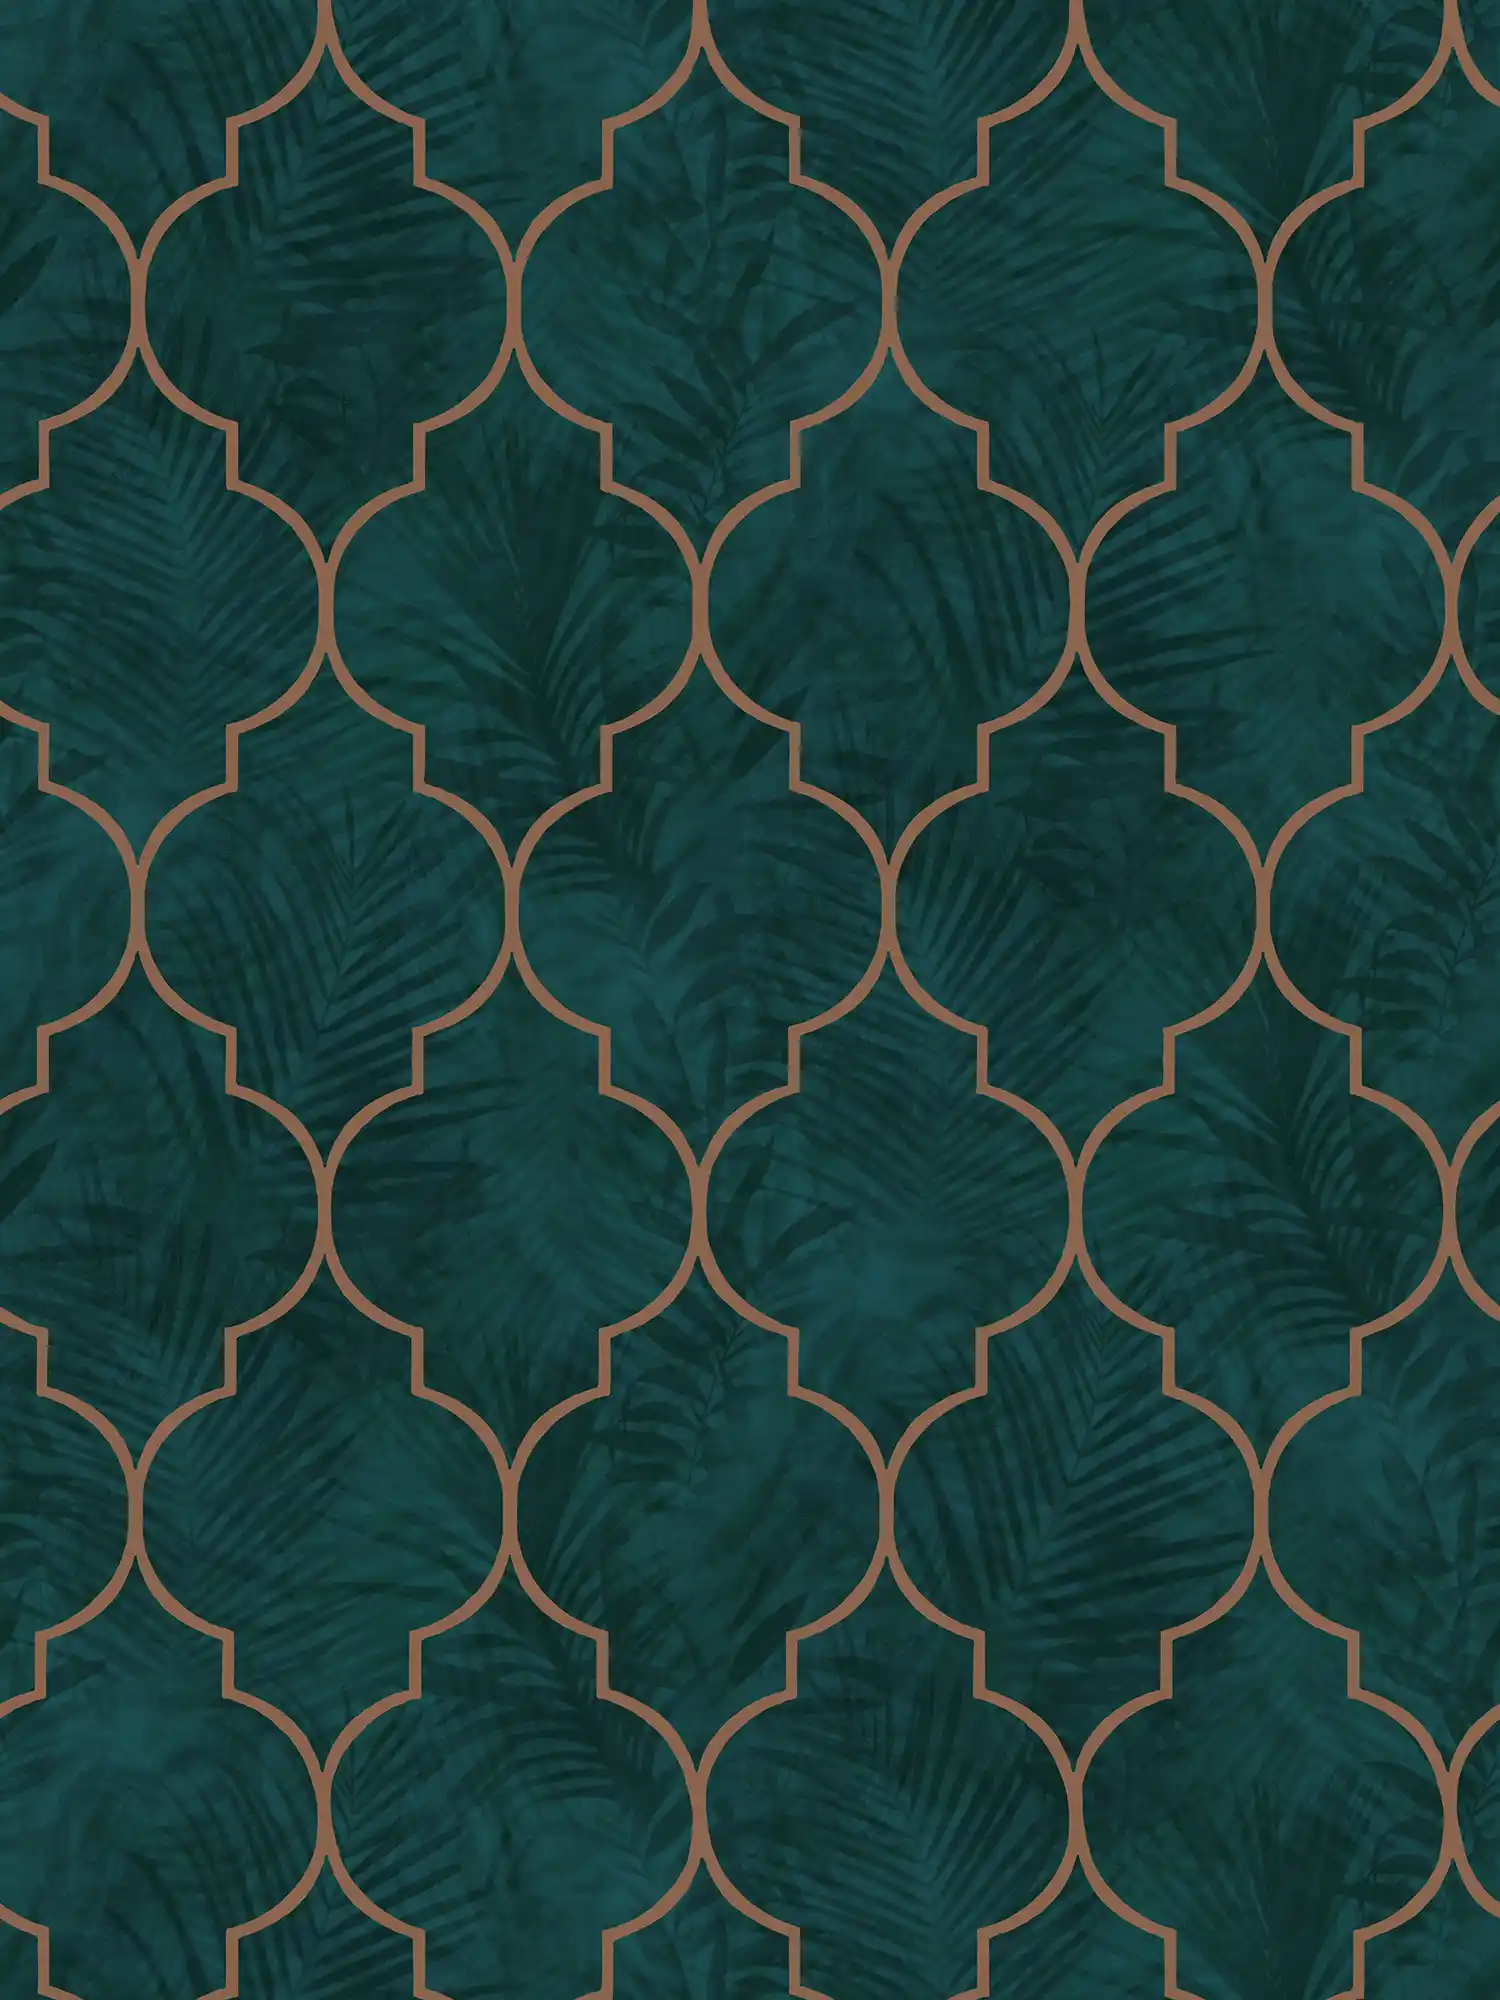 papier peint en papier carrelage avec ornement et motif de feuilles - vert, turquoise, marron
